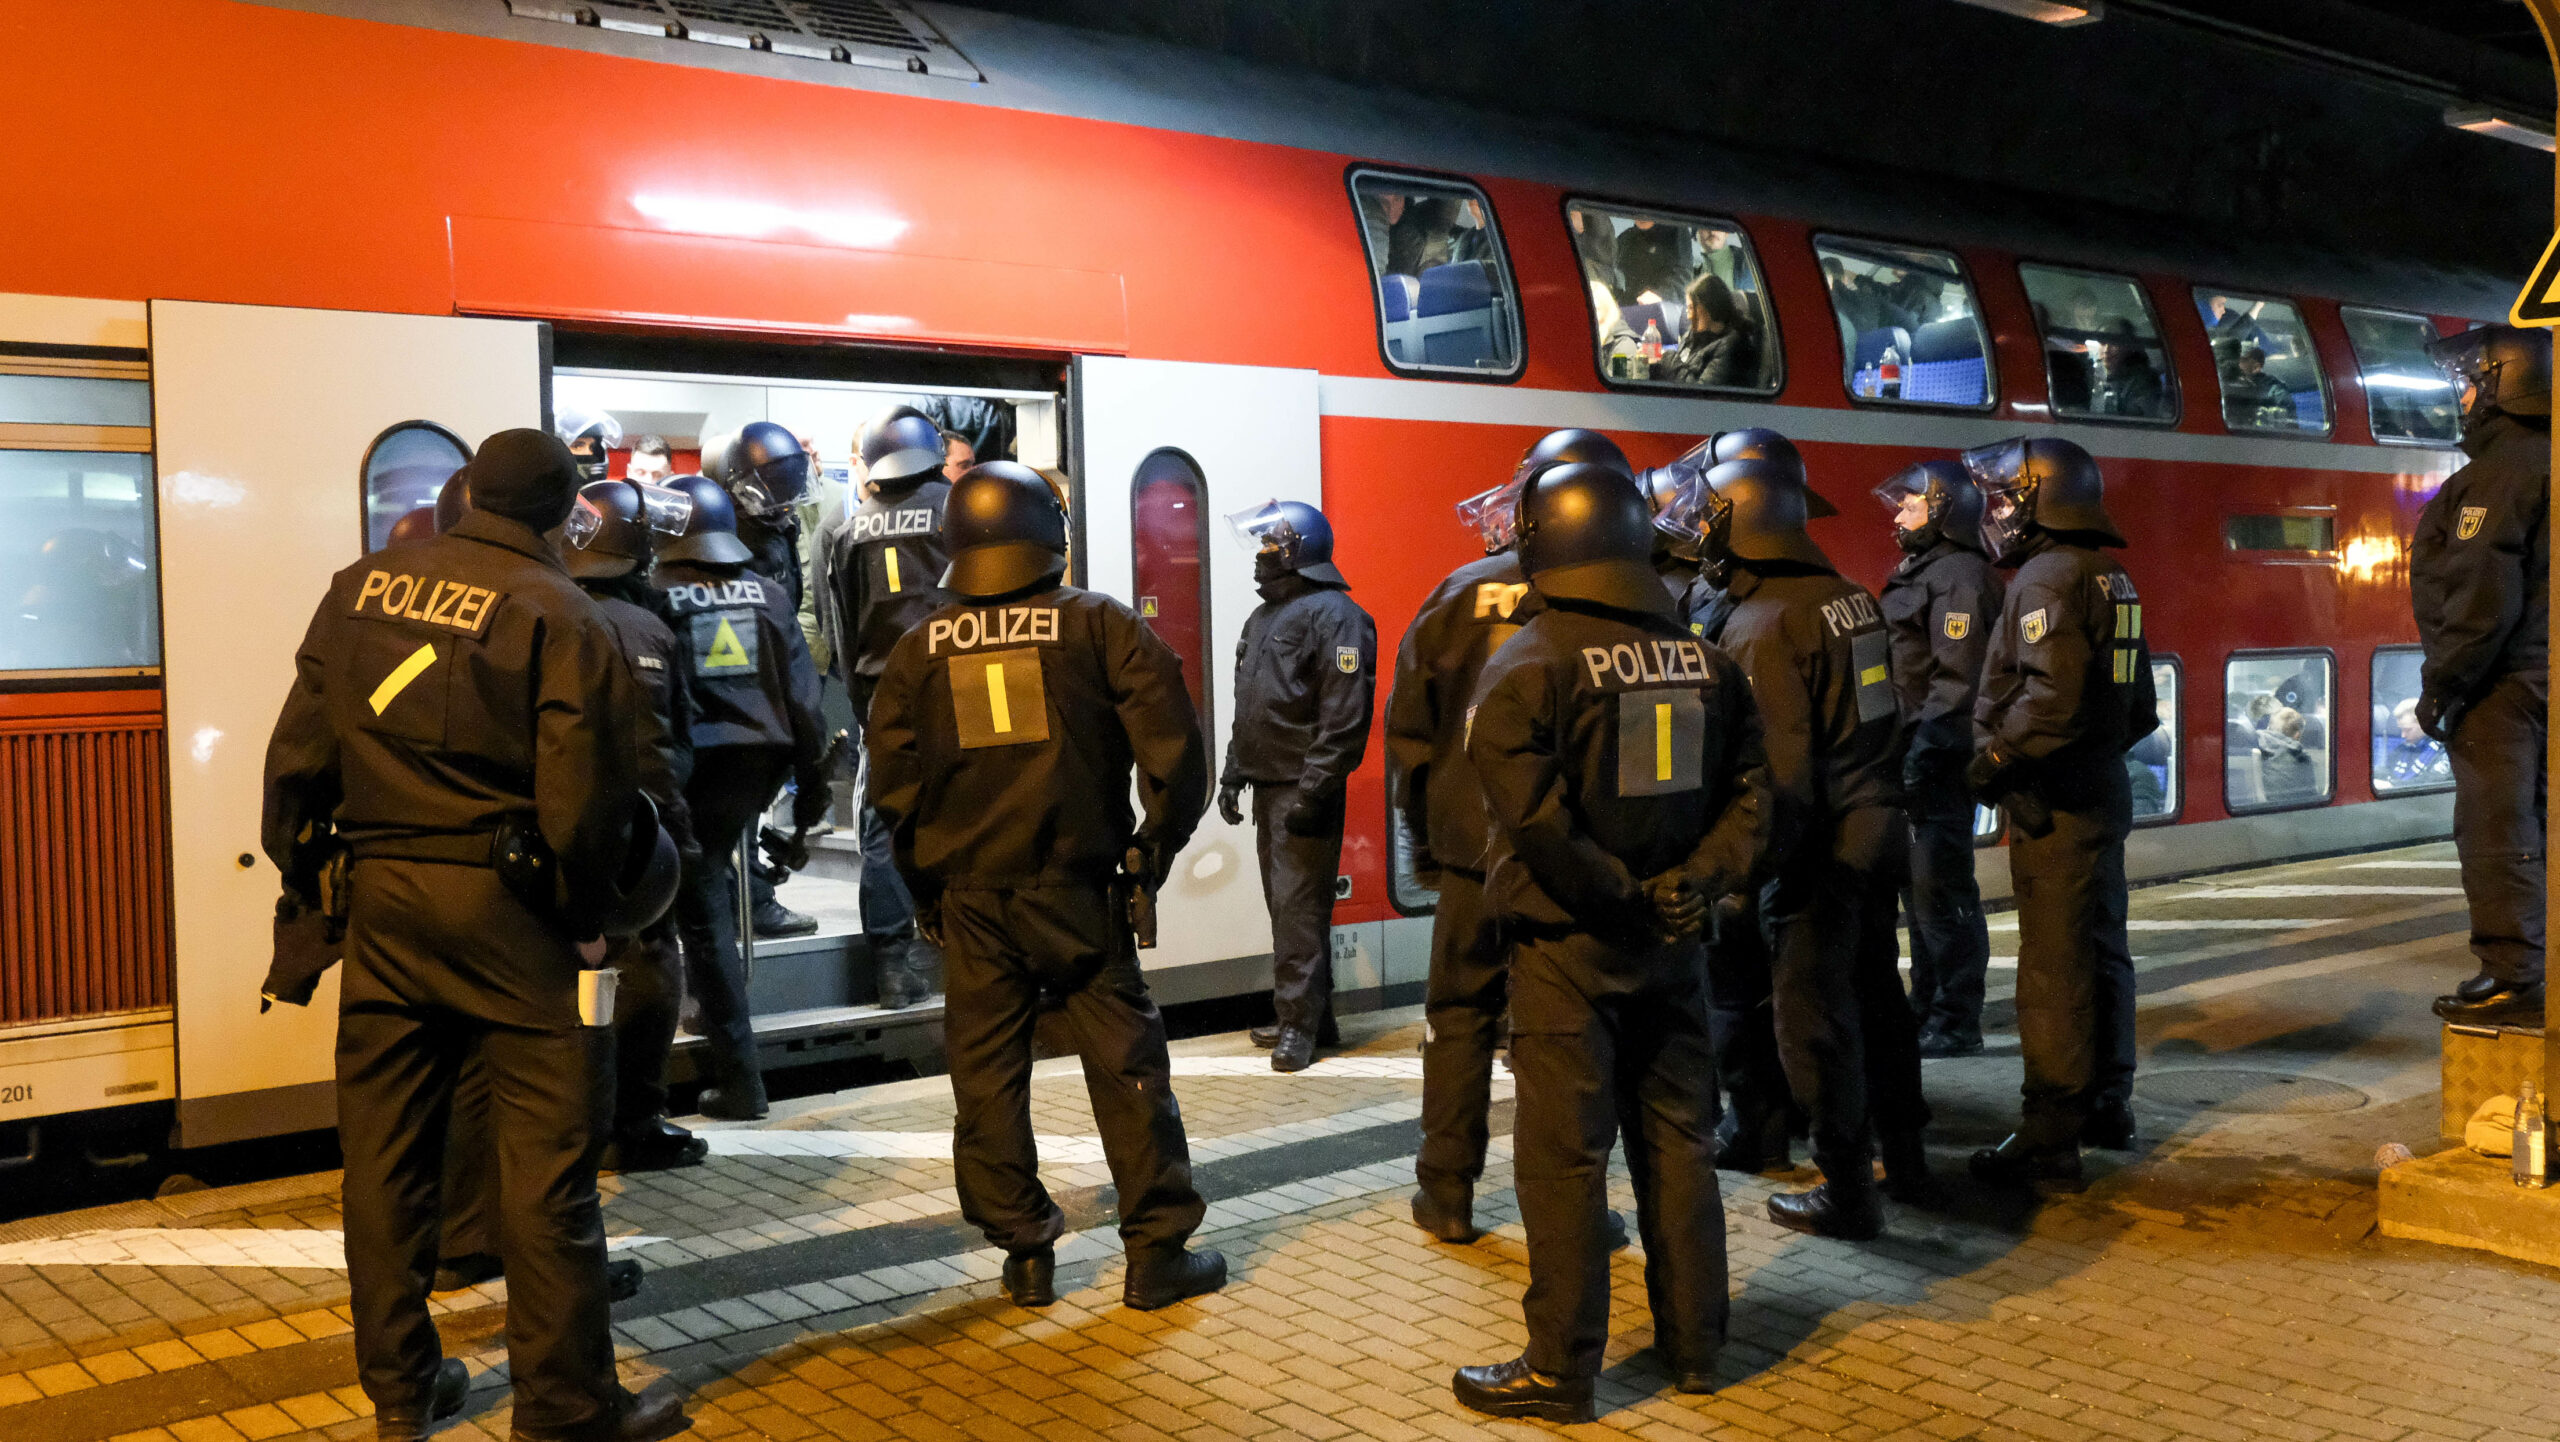 Umstrittener Einsatz am Bergedorfer Bahnhof anlässlich eines HSV Auswärtsspiel: Einsatzleiter wurde versetzt